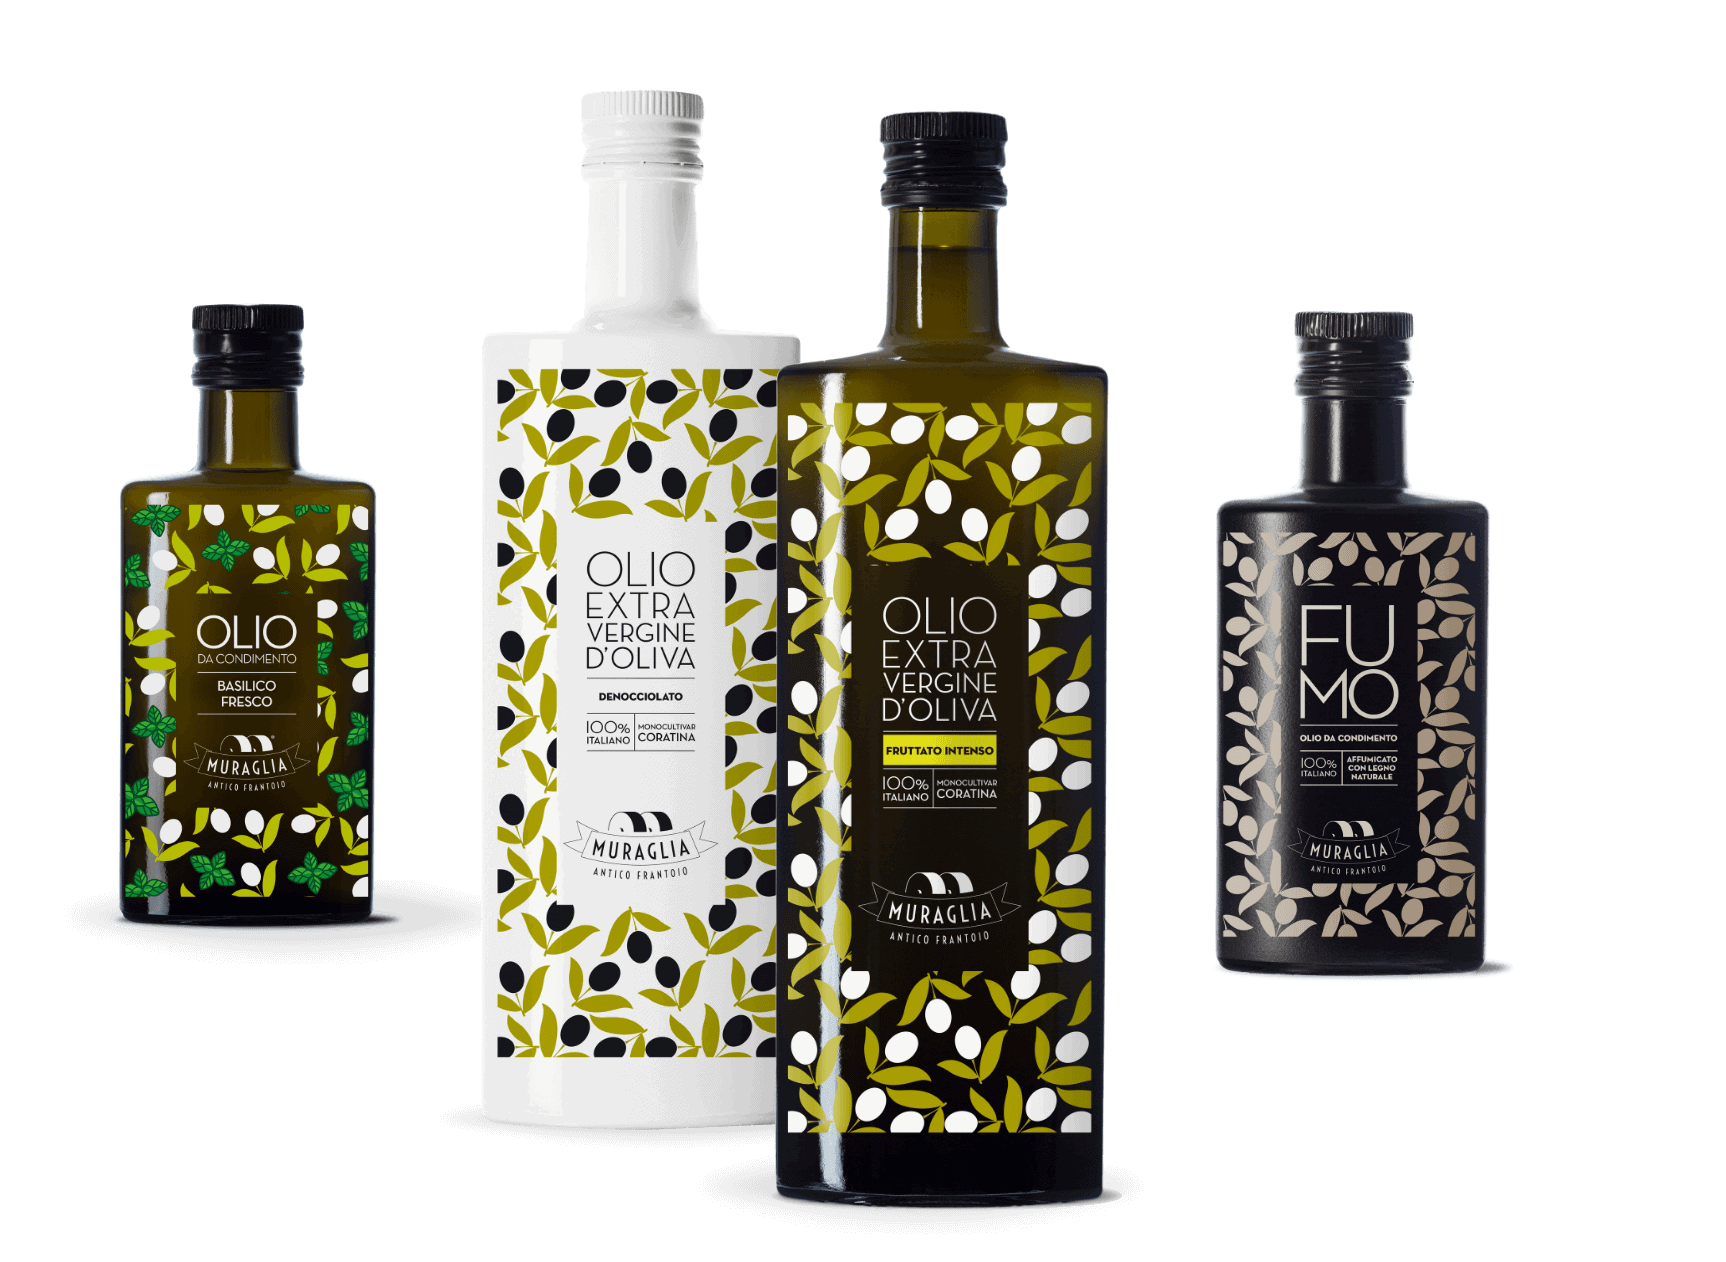 Huile d'olive bouteille céramique - Gocce